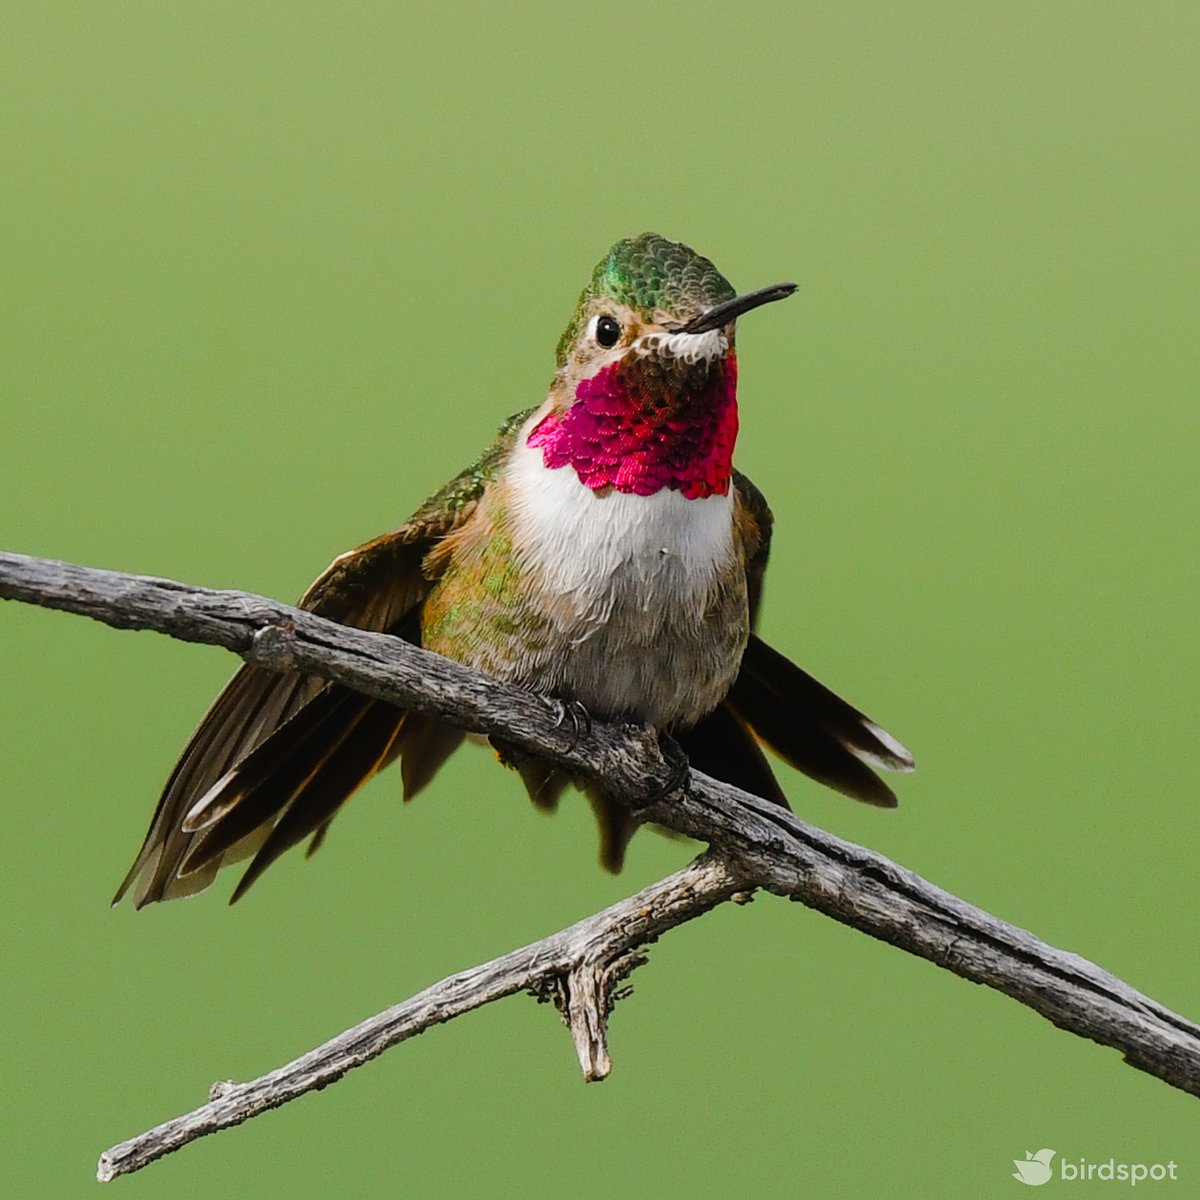 One-click edit using the 'hummingbird 5' birdpack™ preset. Improve your bird photos today with birdpack™ by birdspot.com

#bird #birds #birding #nature #ilikebirds #birdspot #birdpack #hellobirdspot